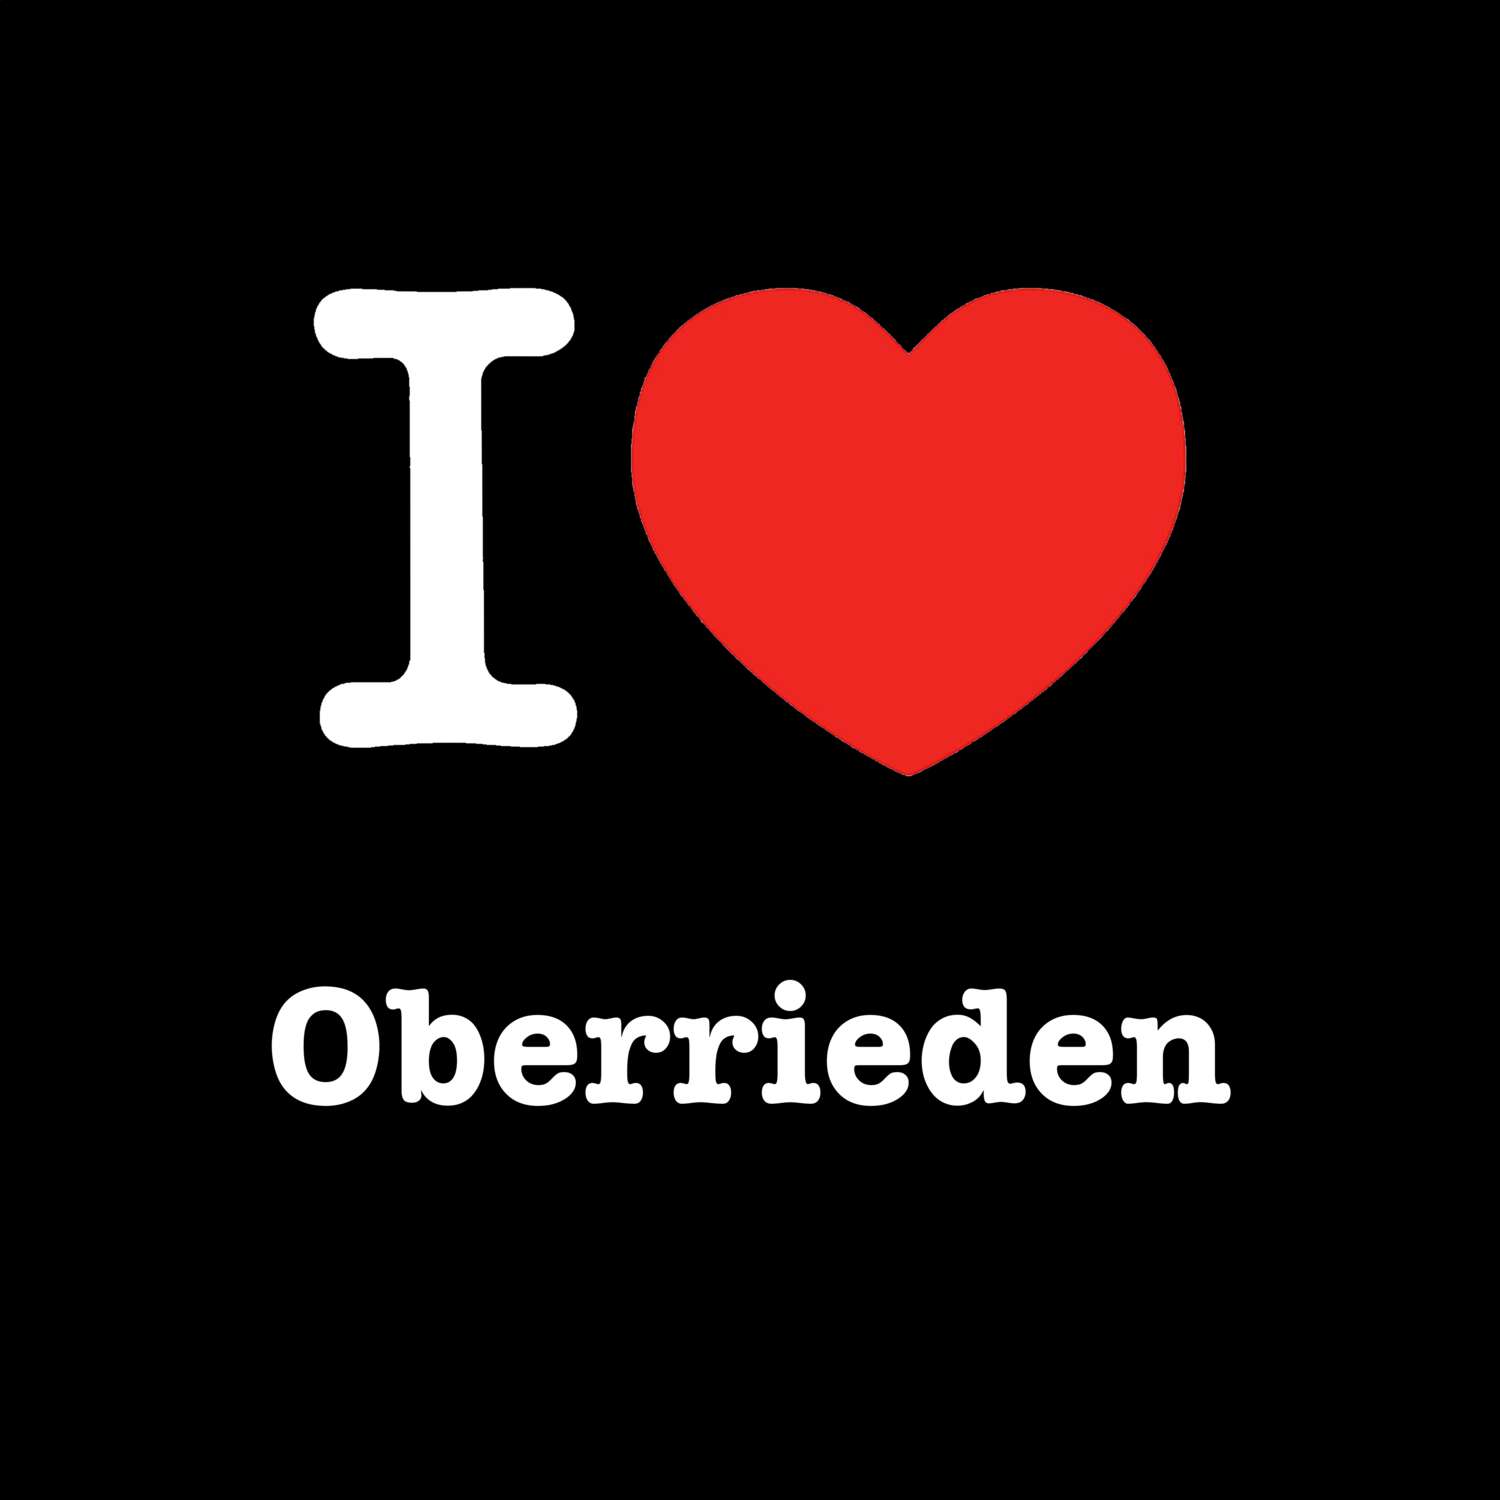 Oberrieden T-Shirt »I love«